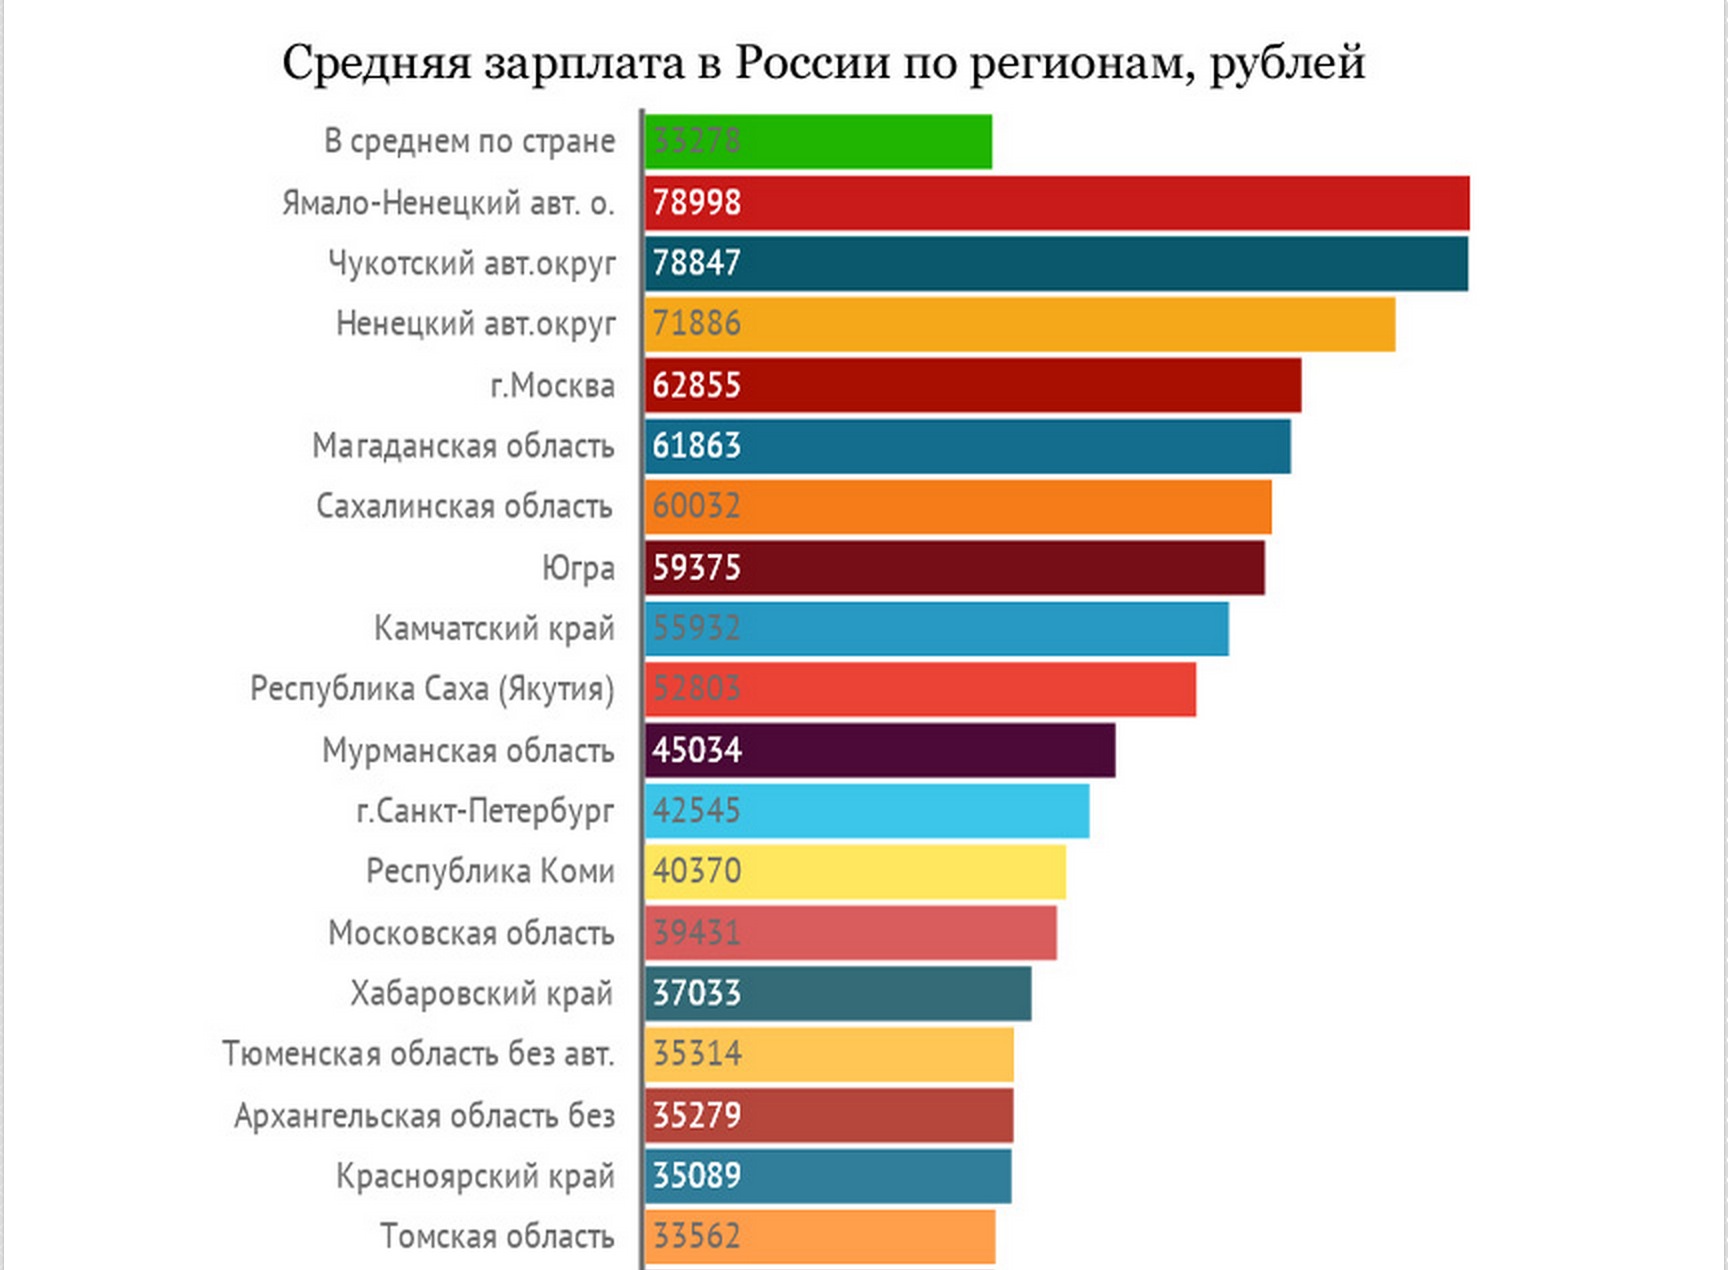 Мишустин средняя зарплата в россии. Средняя заработная плата в России по регионам. Уровень зарплат в Росс. Уровень зарплат по регионам. Средняя зарплата по Росси.